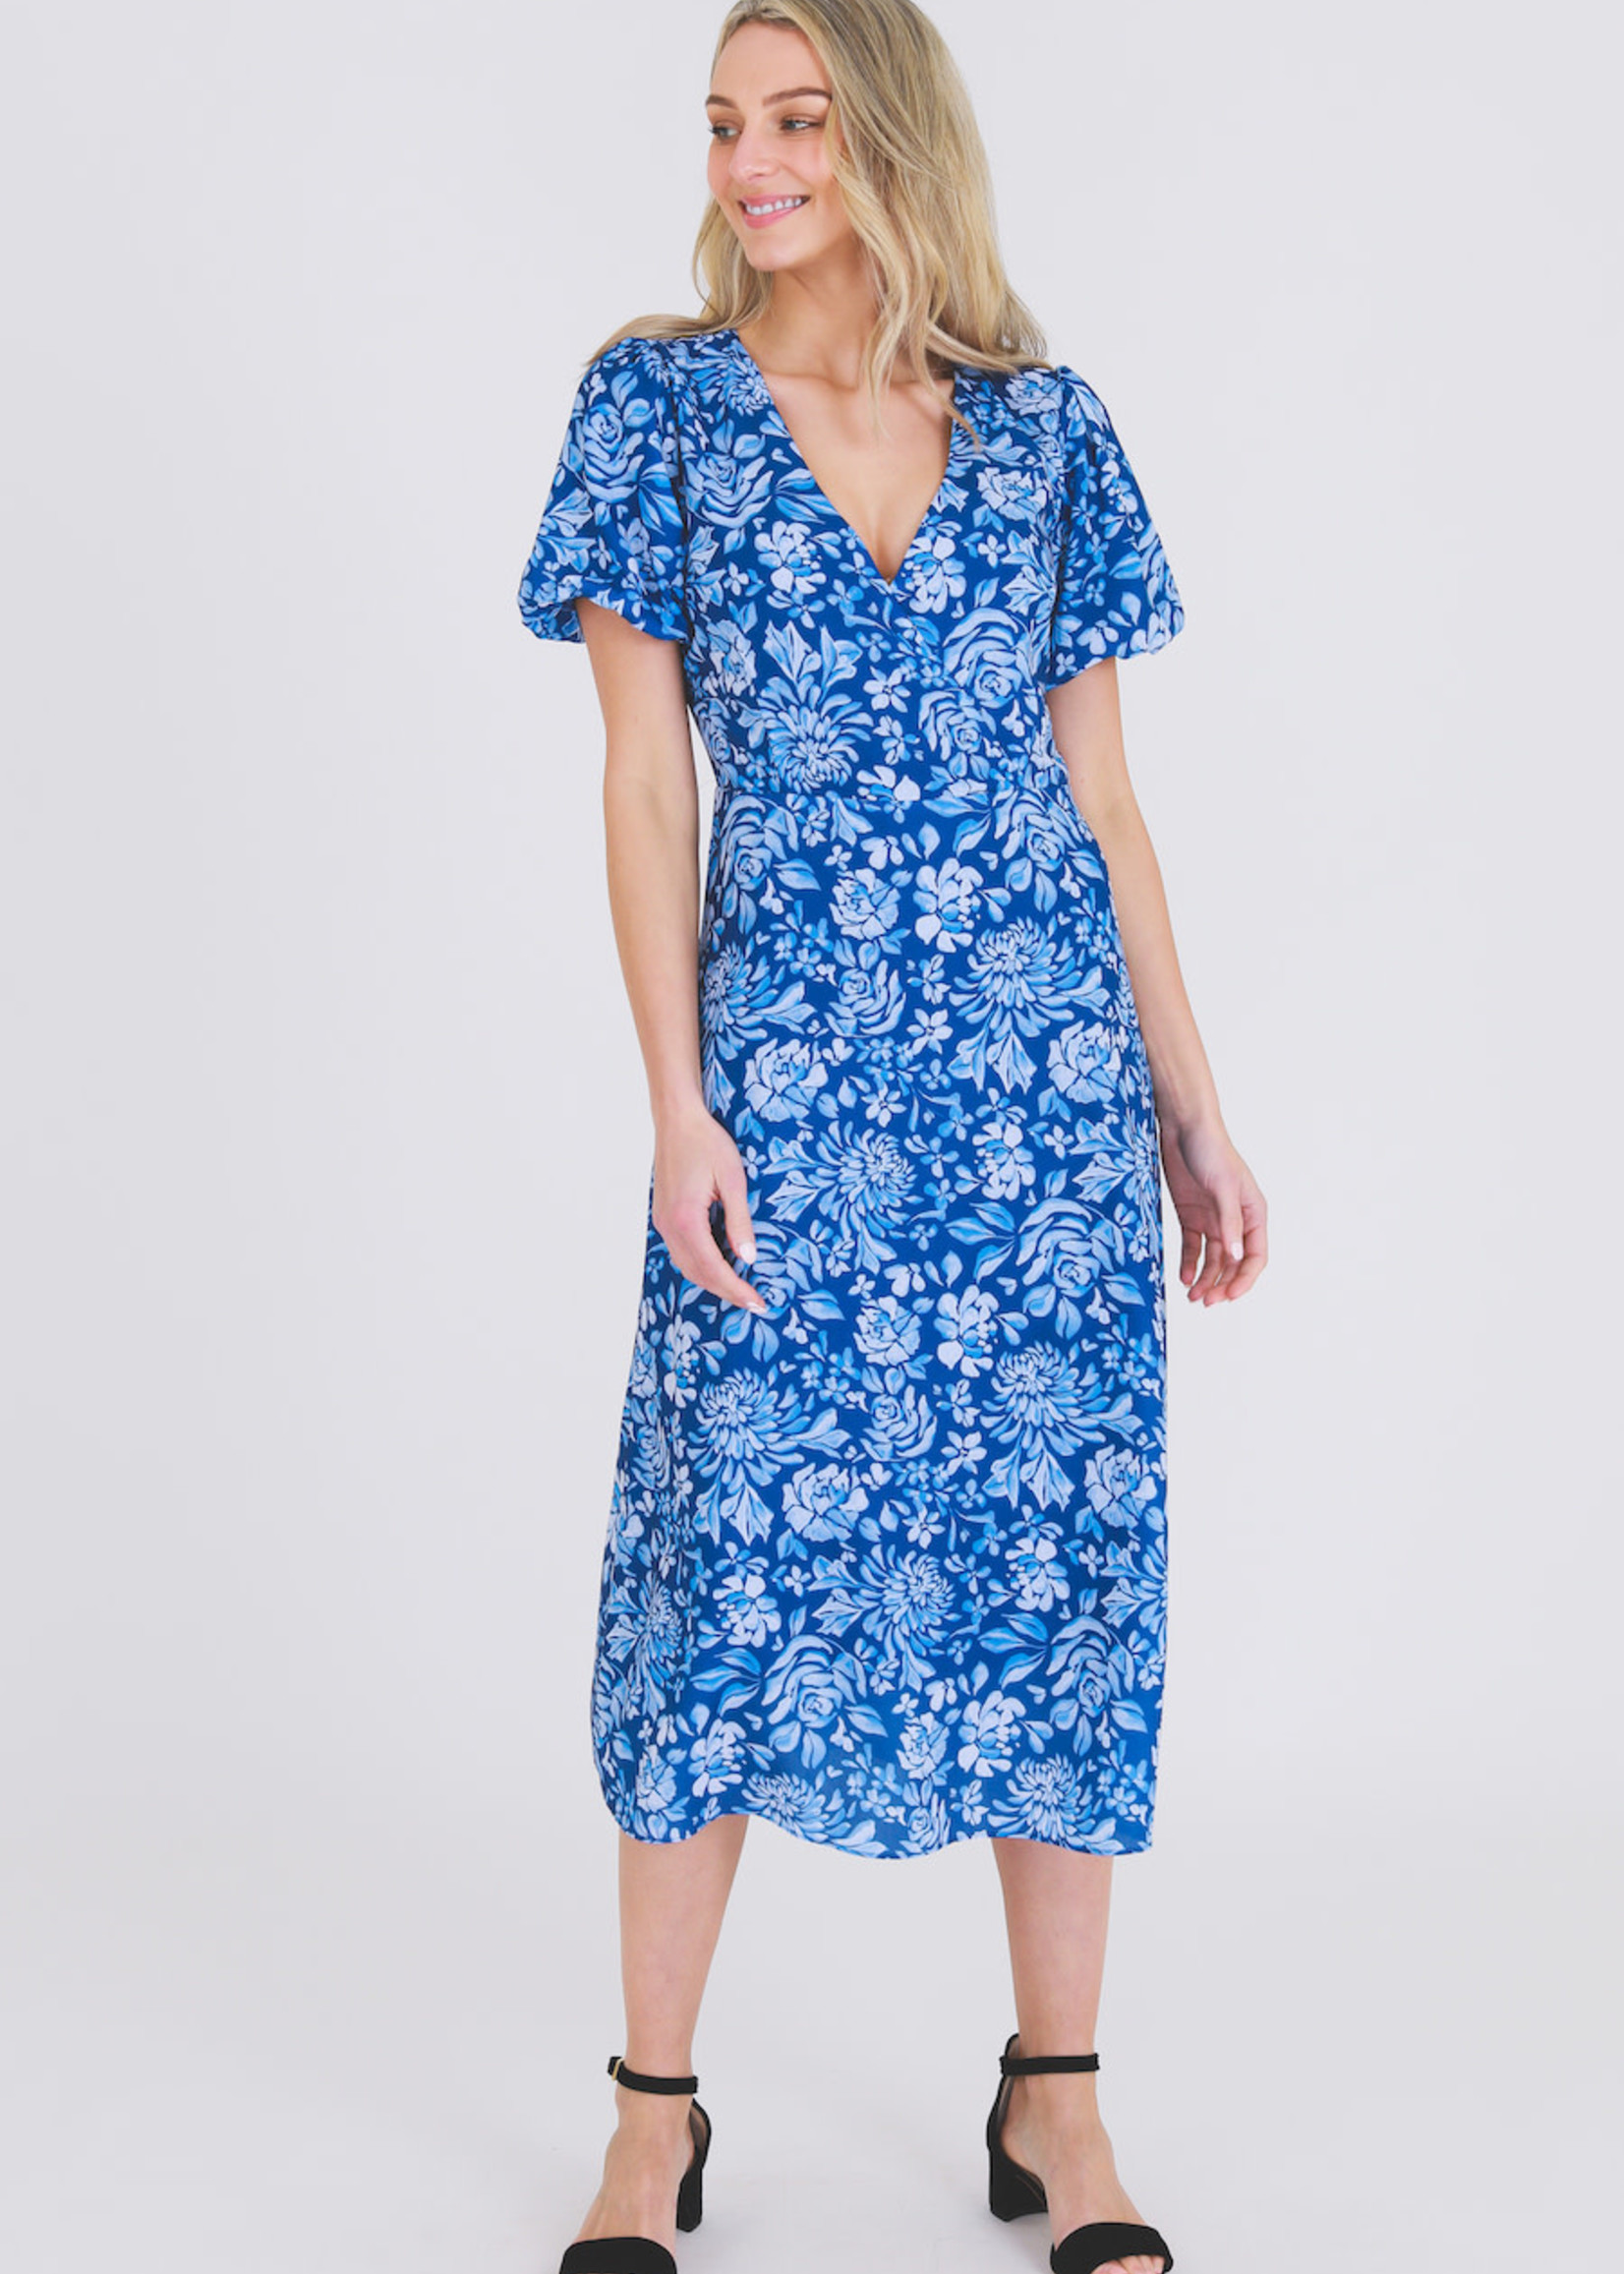 3rd Love Blue Floral V Neck Short Sleeve Mid Length Dress